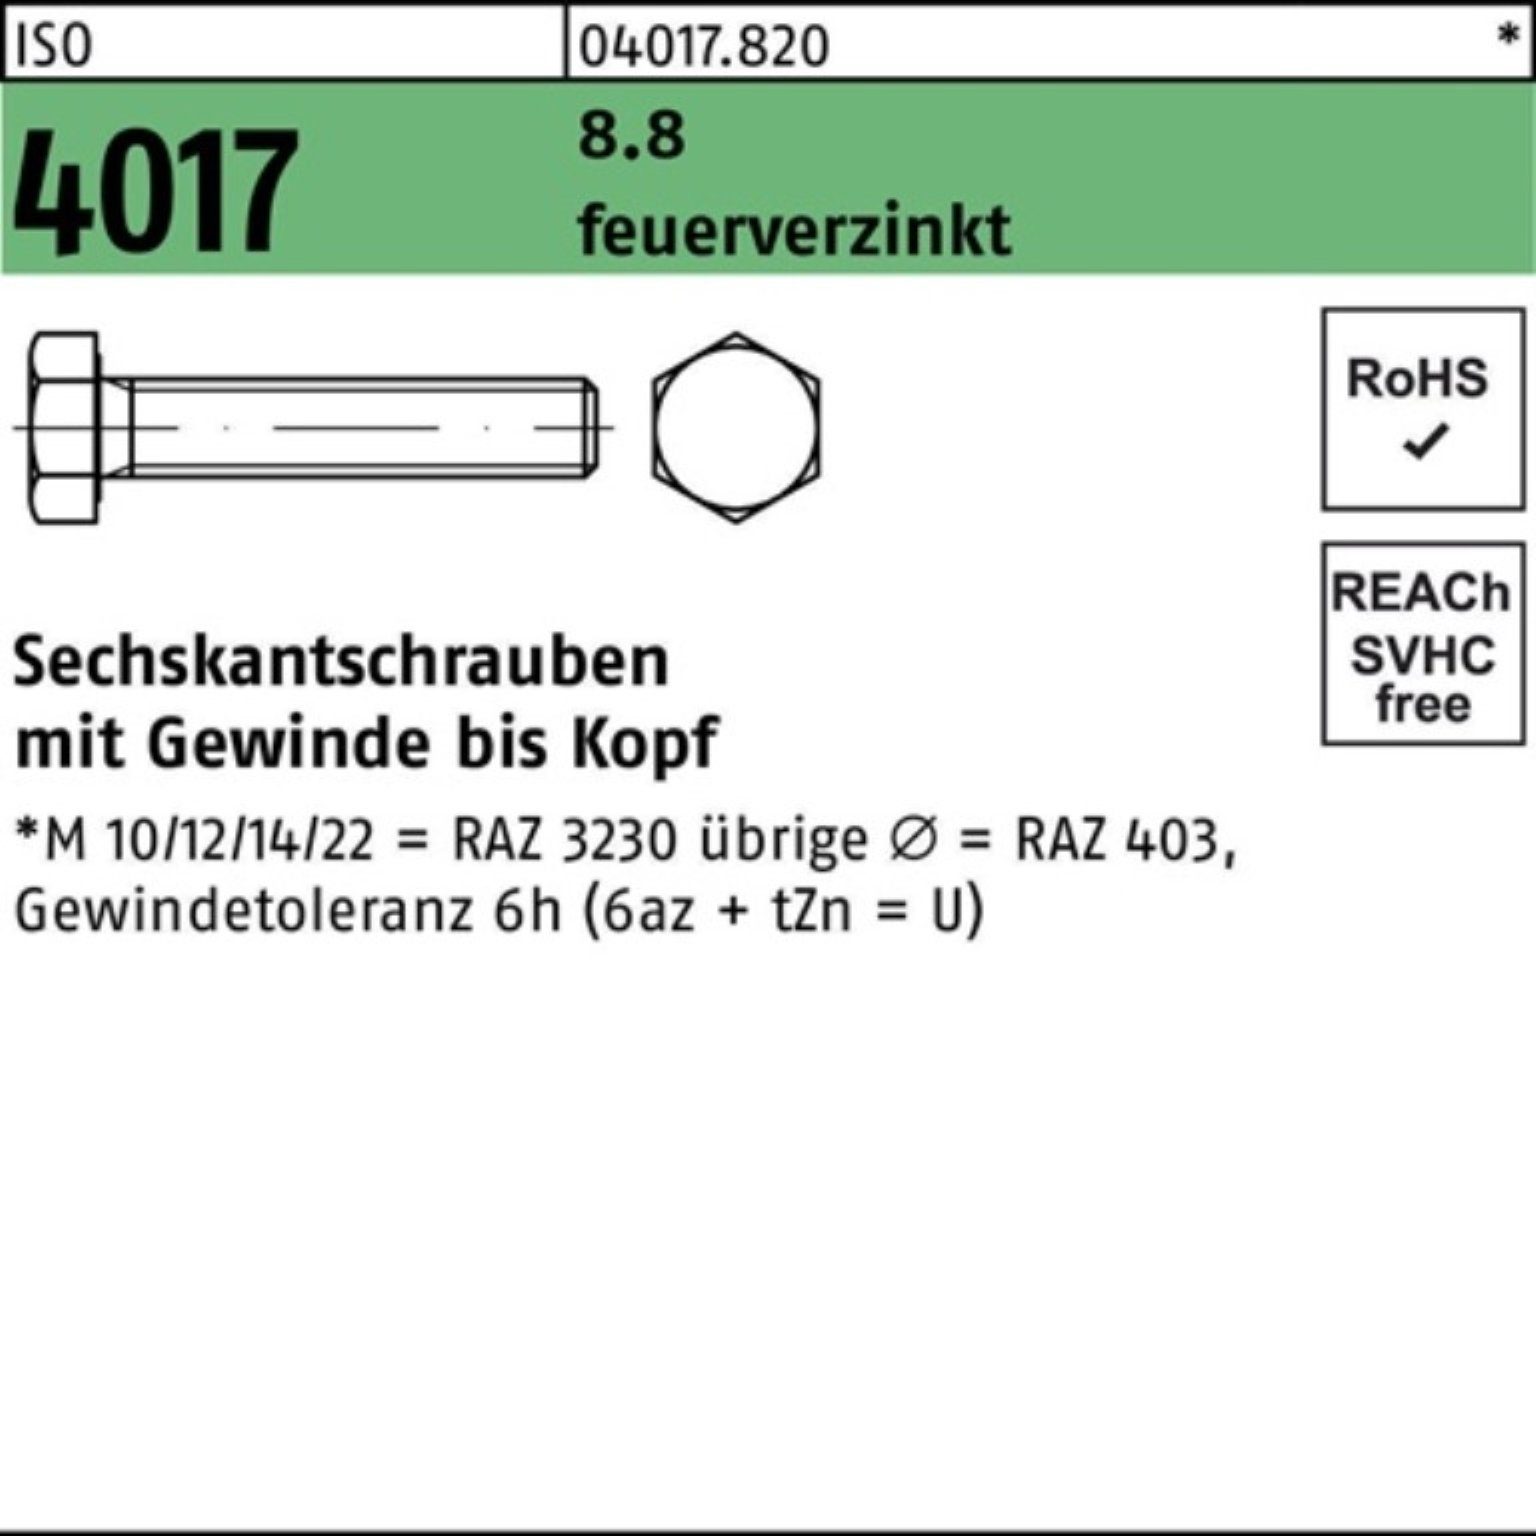 Bufab Sechskantschraube 100er Pack Sechskantschraube ISO 4017 VG M10x 90 8.8 feuerverz. 100 St